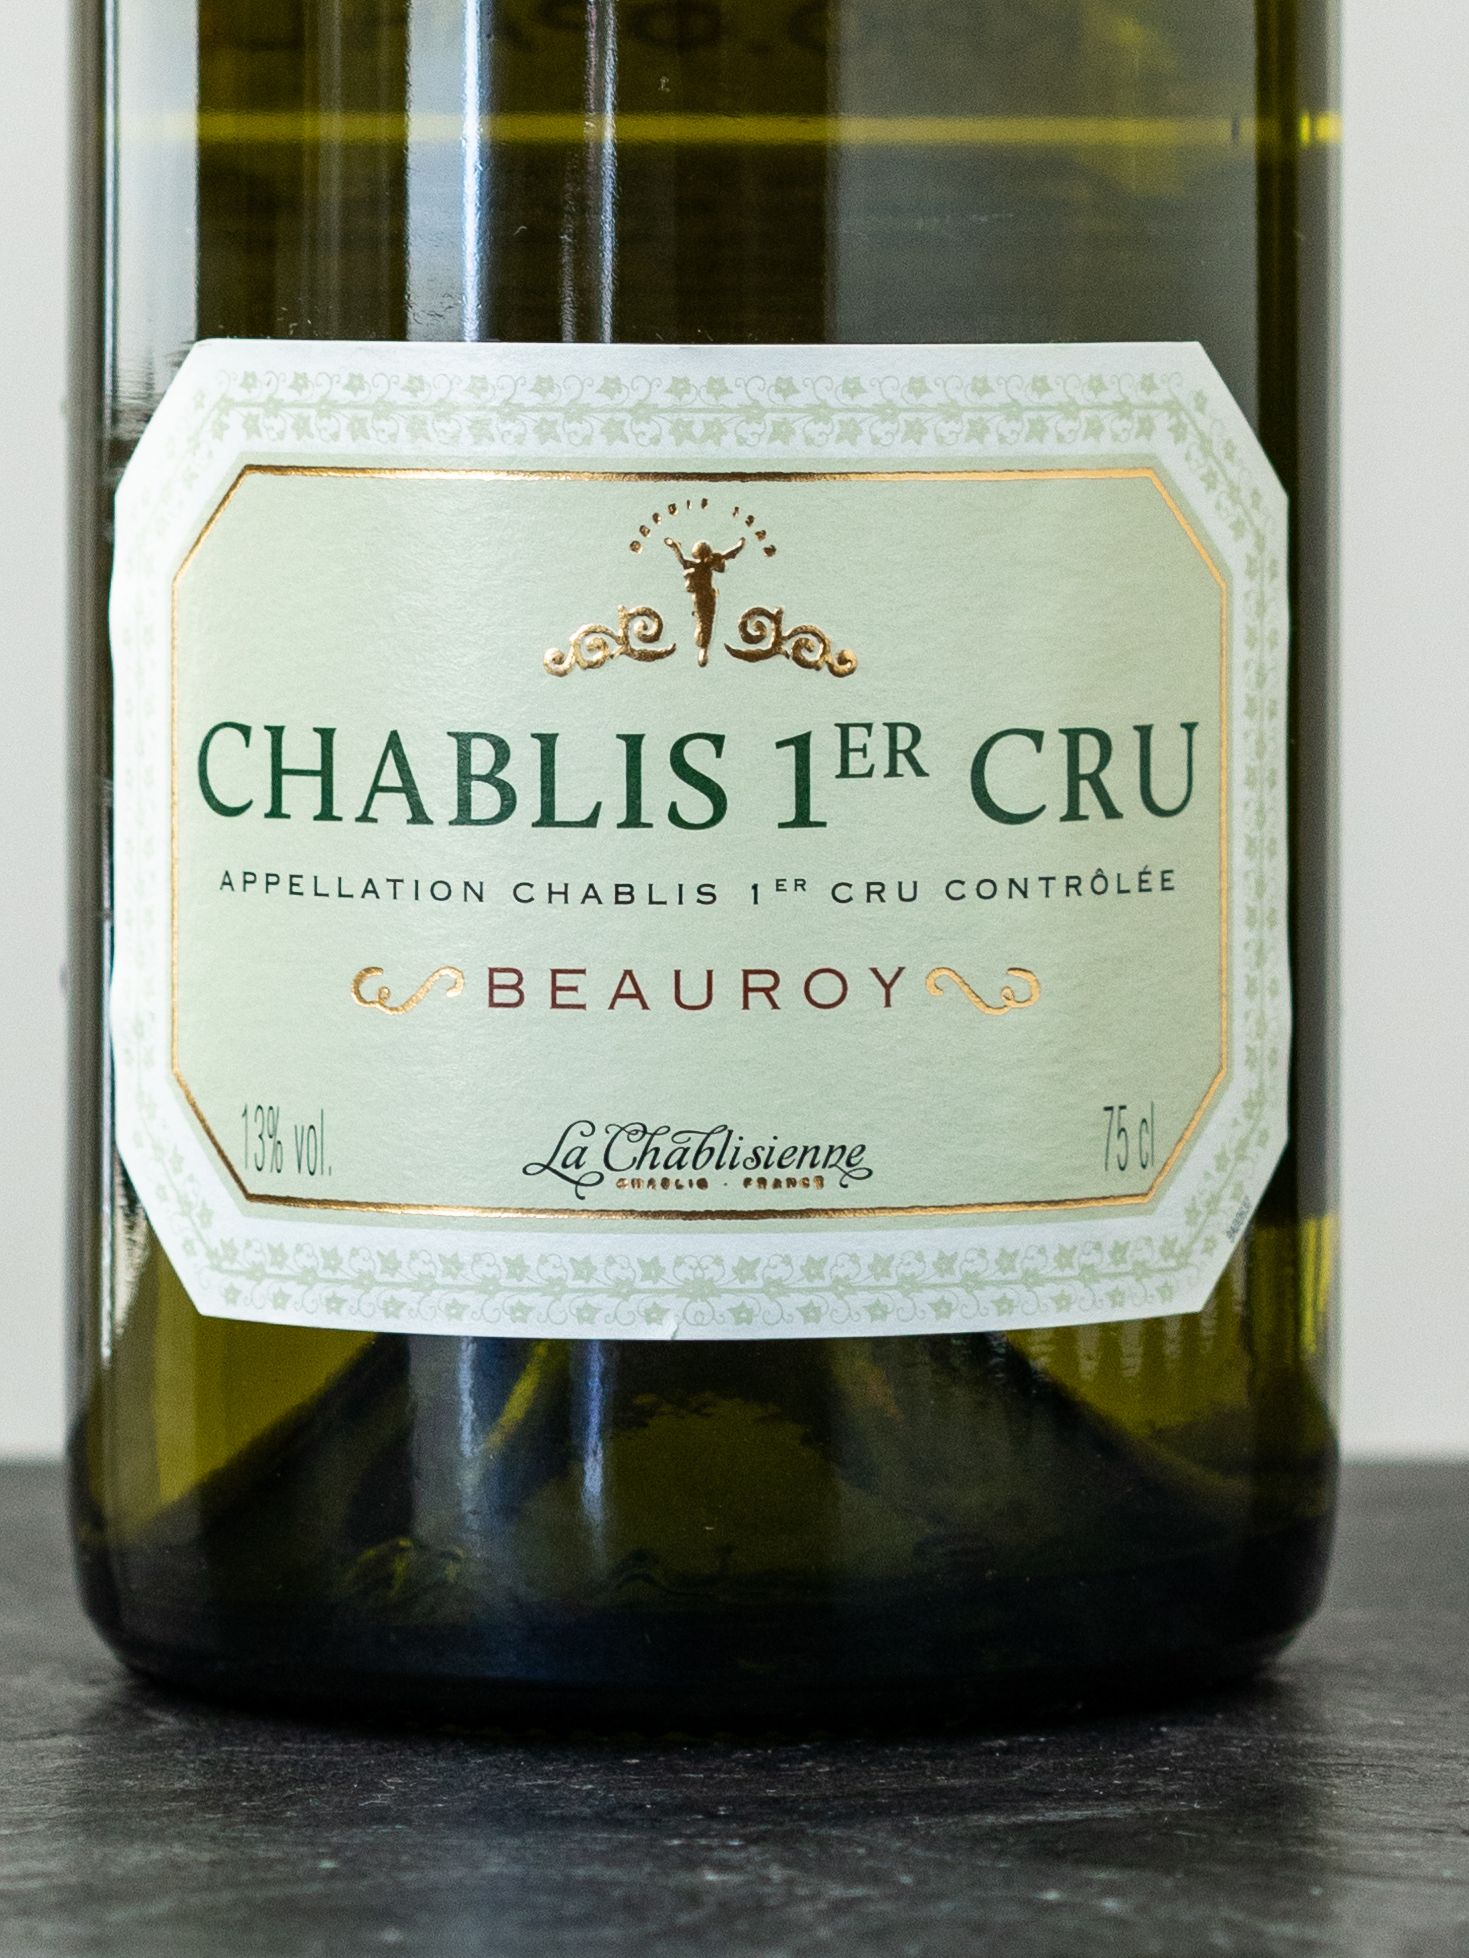 Вино La Chablisienne Chablis Premier Cru Beauroy / Ла Шаблизьен Шабли Премье Крю Боруа